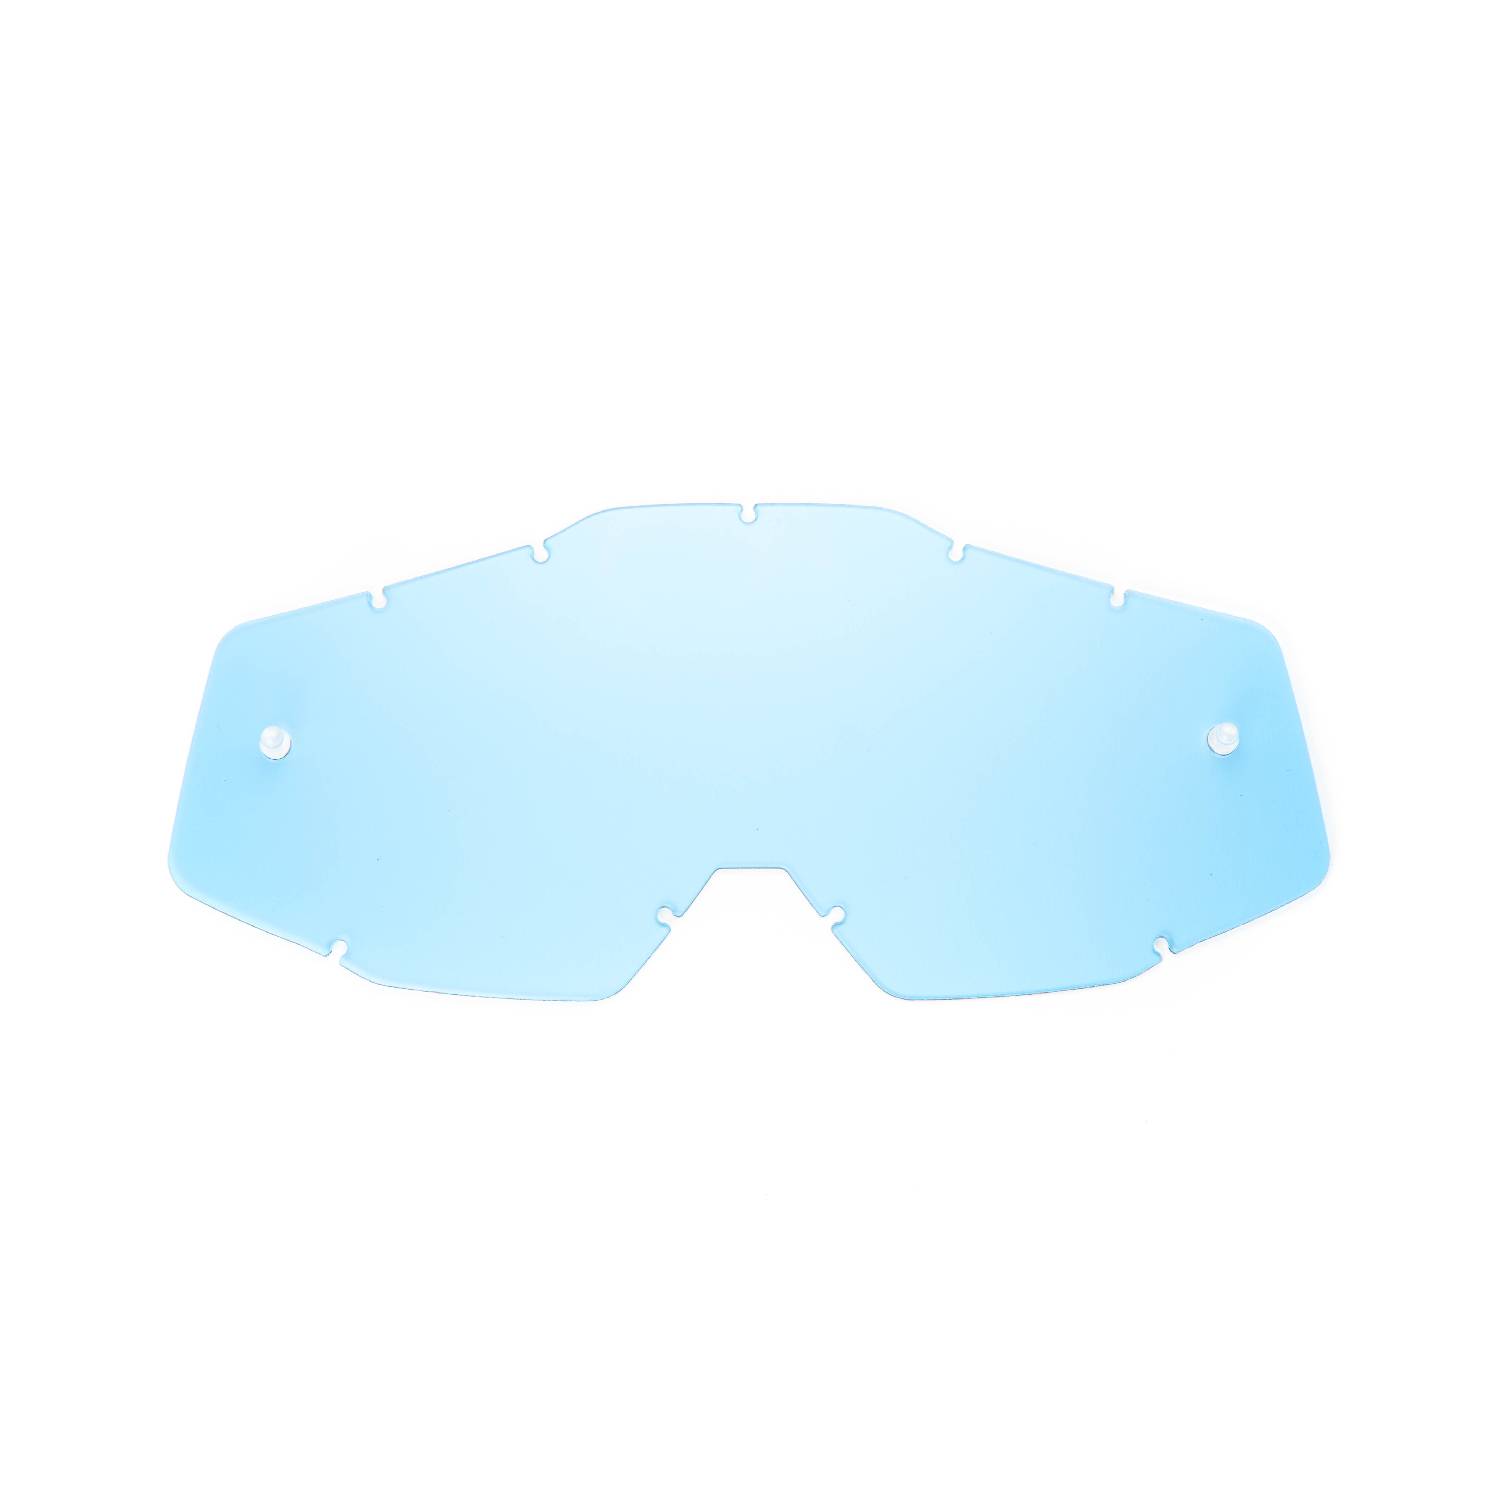 Lente di ricambio blu compatibile per occhiale/maschera FMF POWERBOMB/POWERCORE